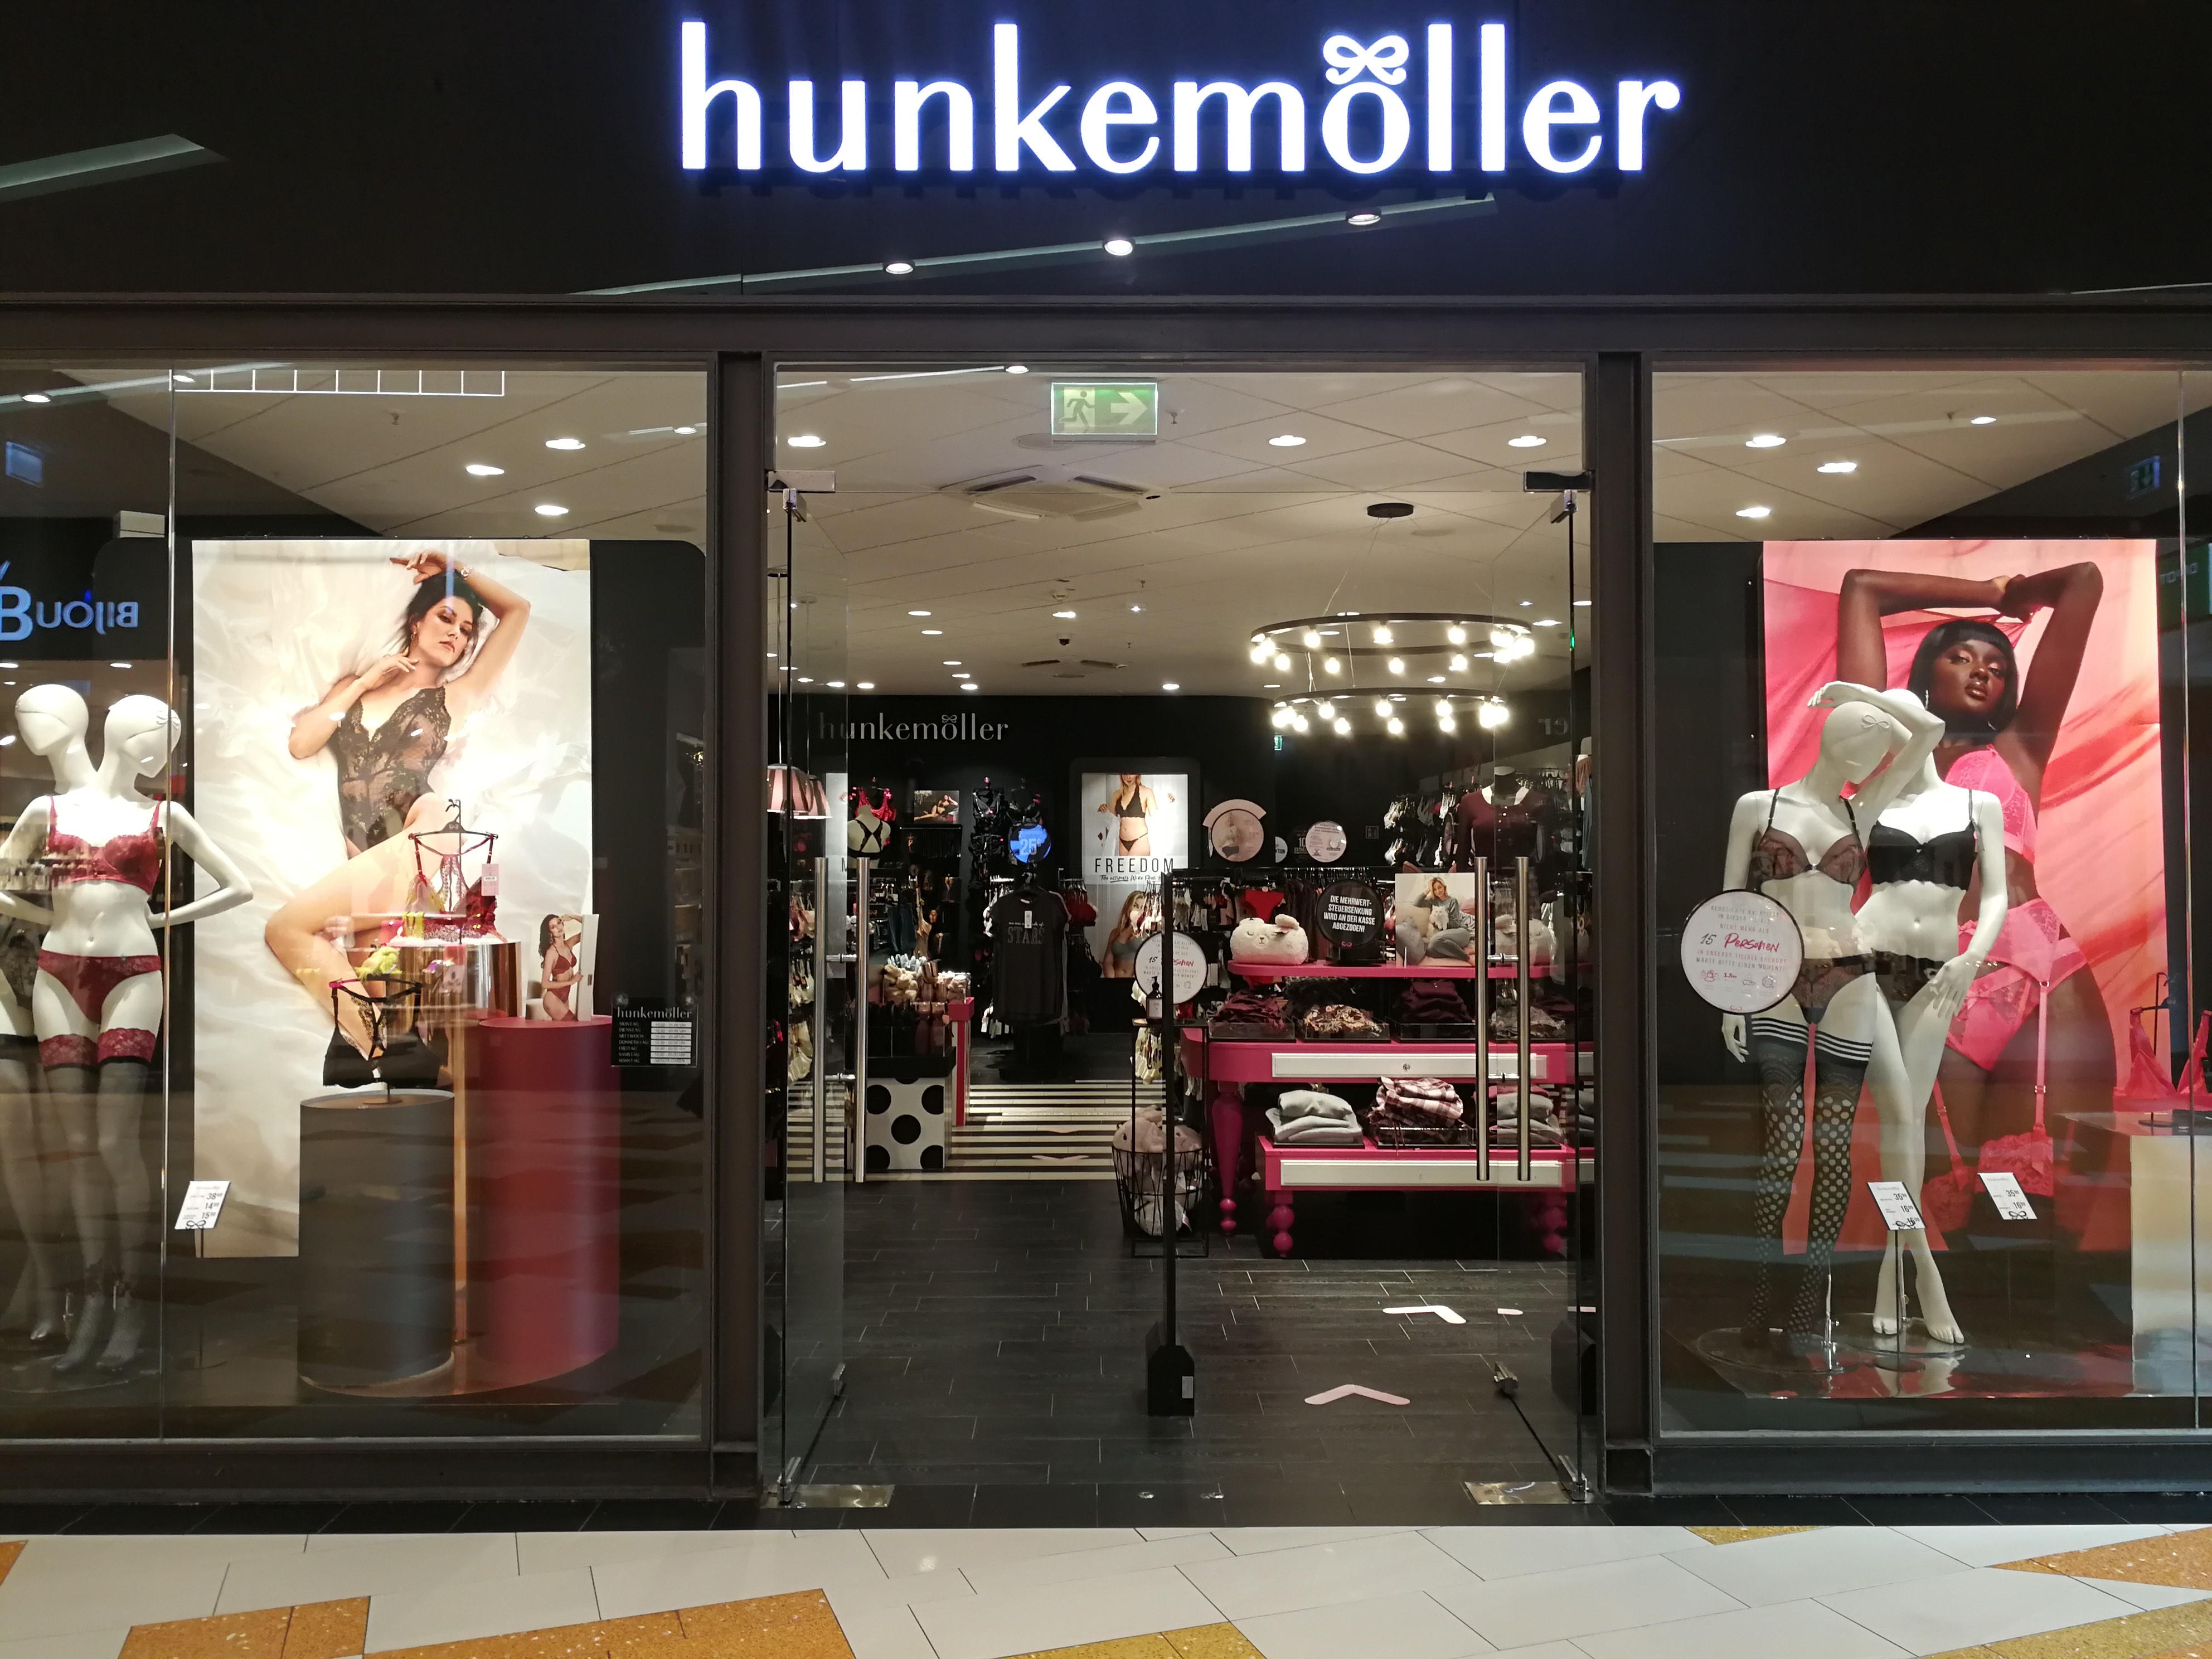 Hunkemöller, Kölner Strasse 99 in Solingen